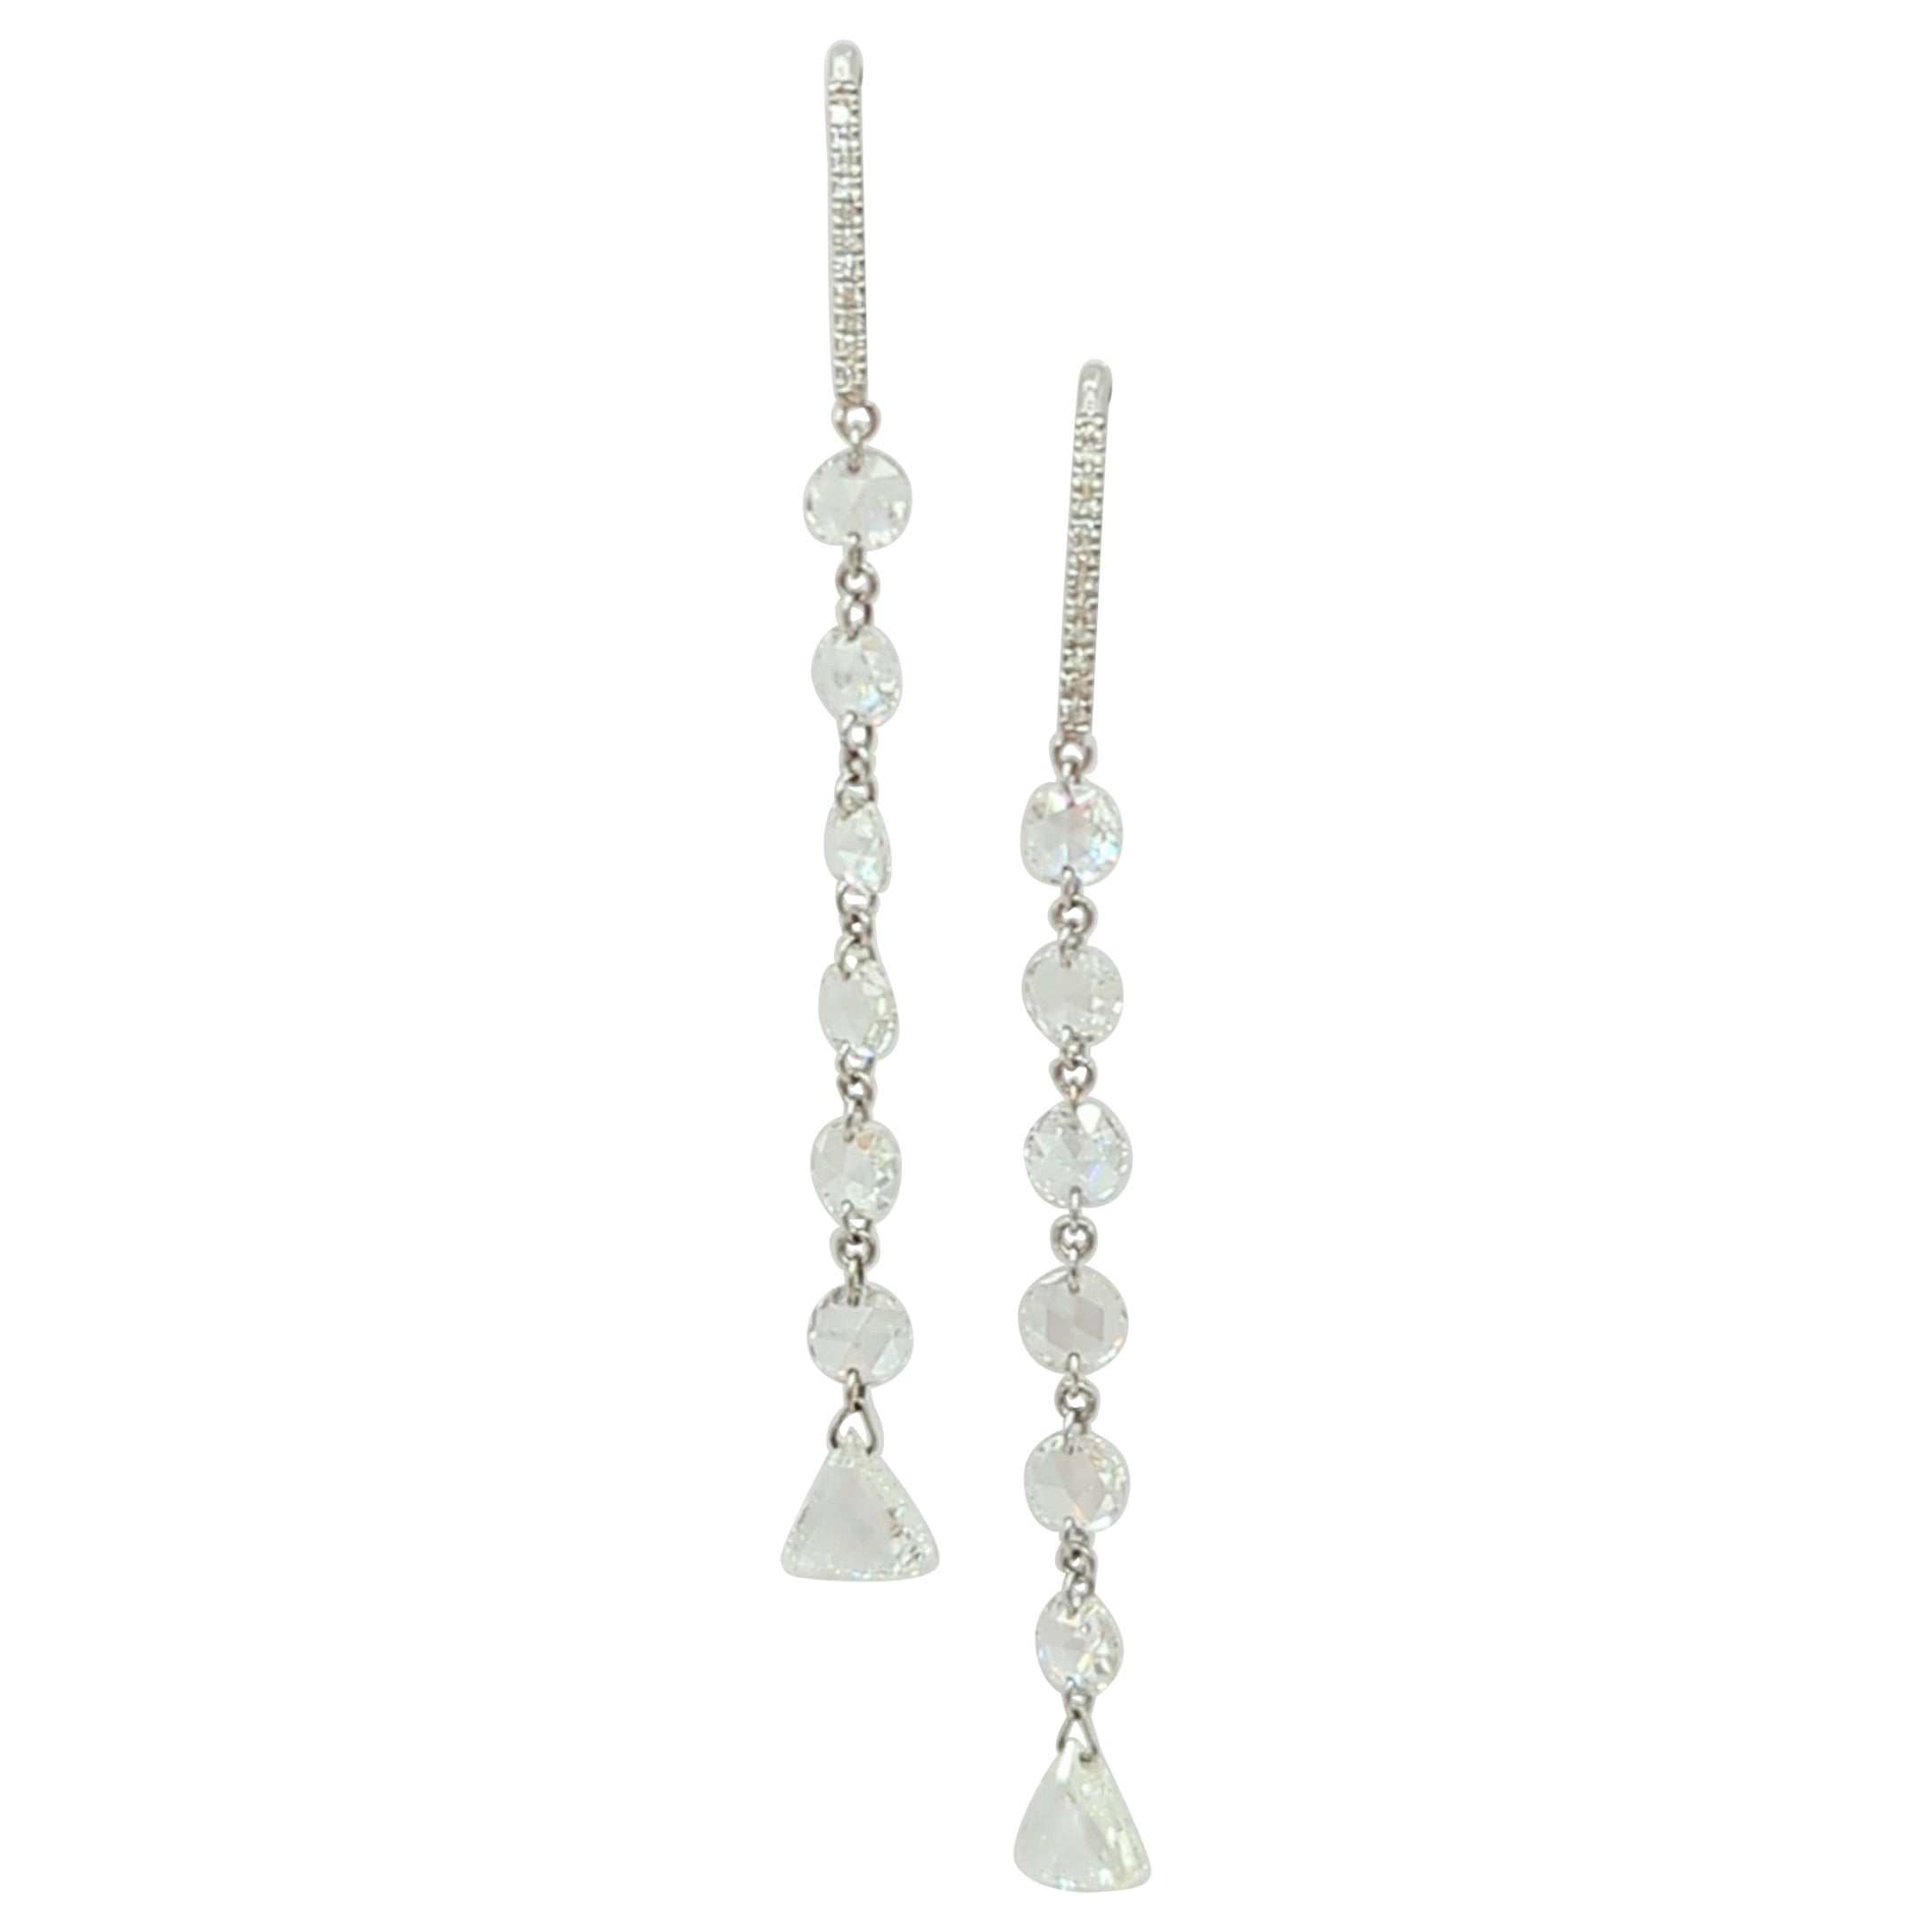 Multi-Shape Rose Cut White Diamond Dangle Earrings in 18K White Gold